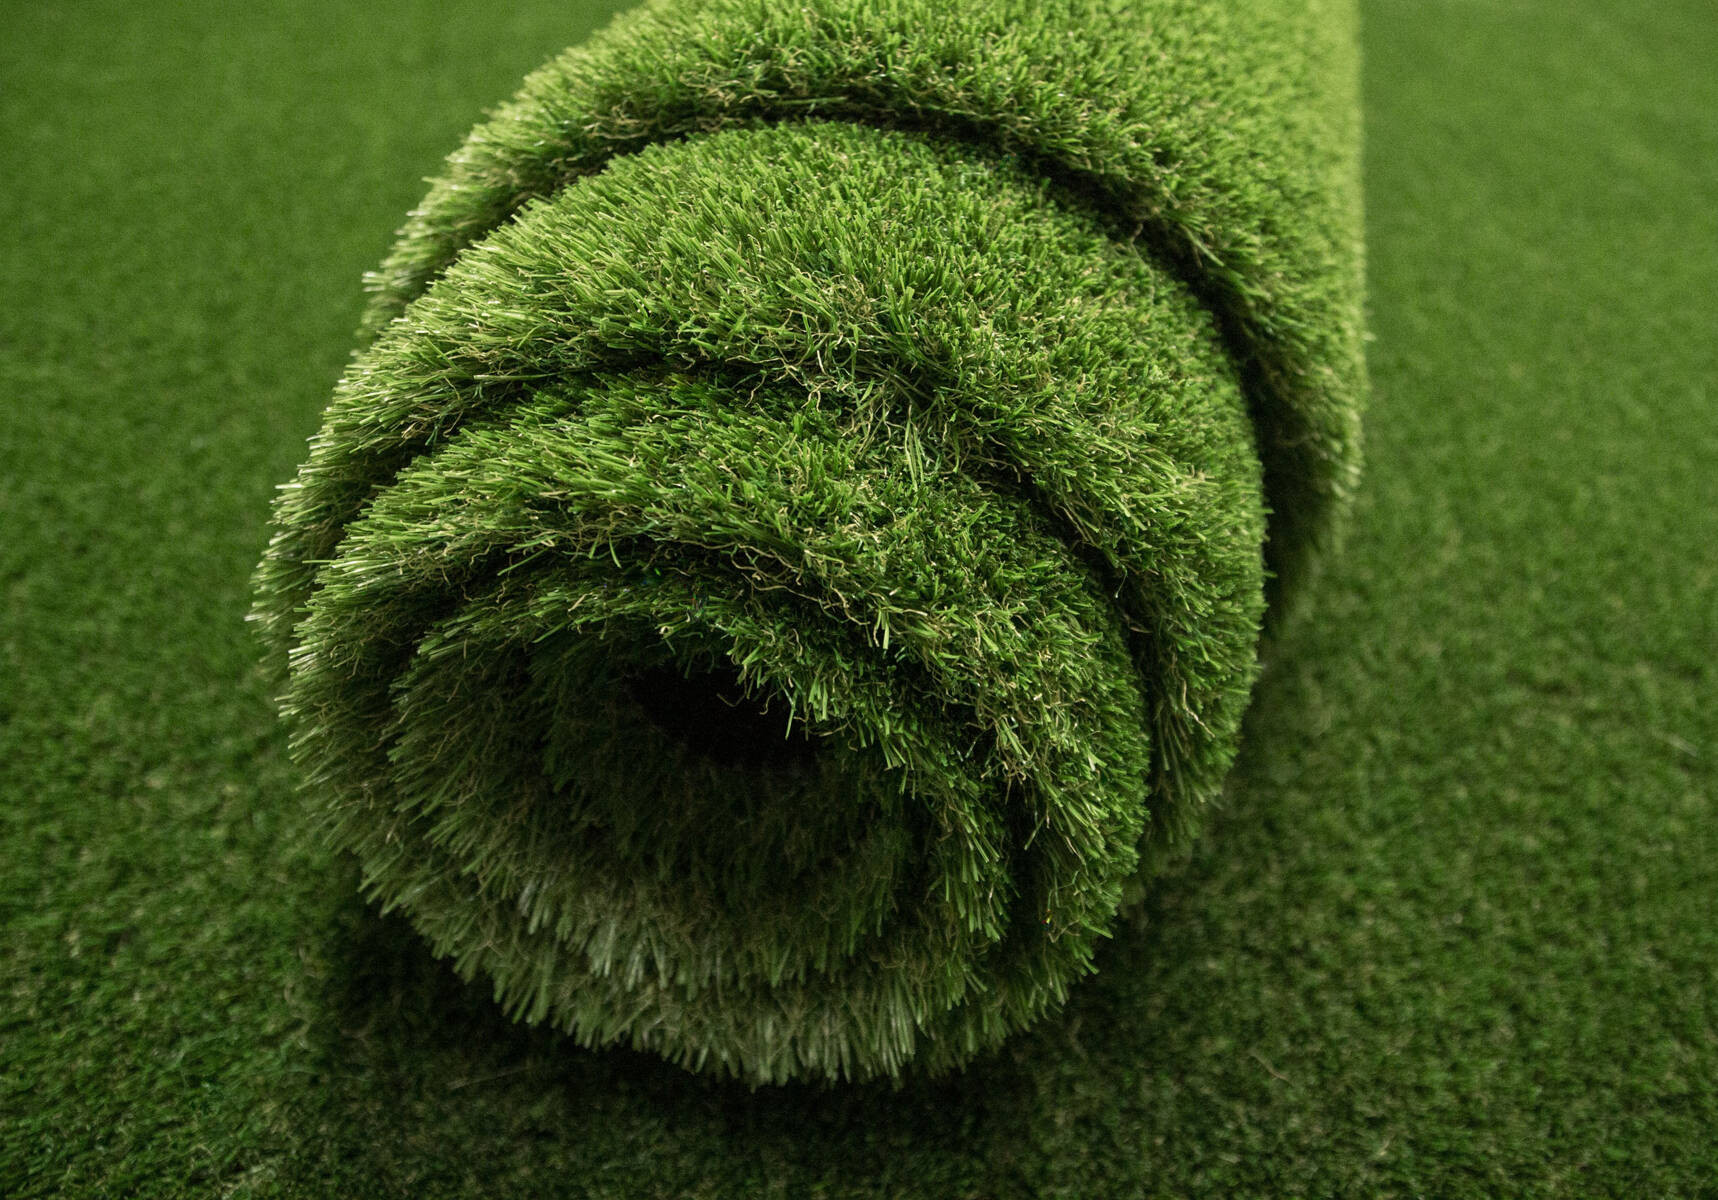 Umelá tráva Soul zelená